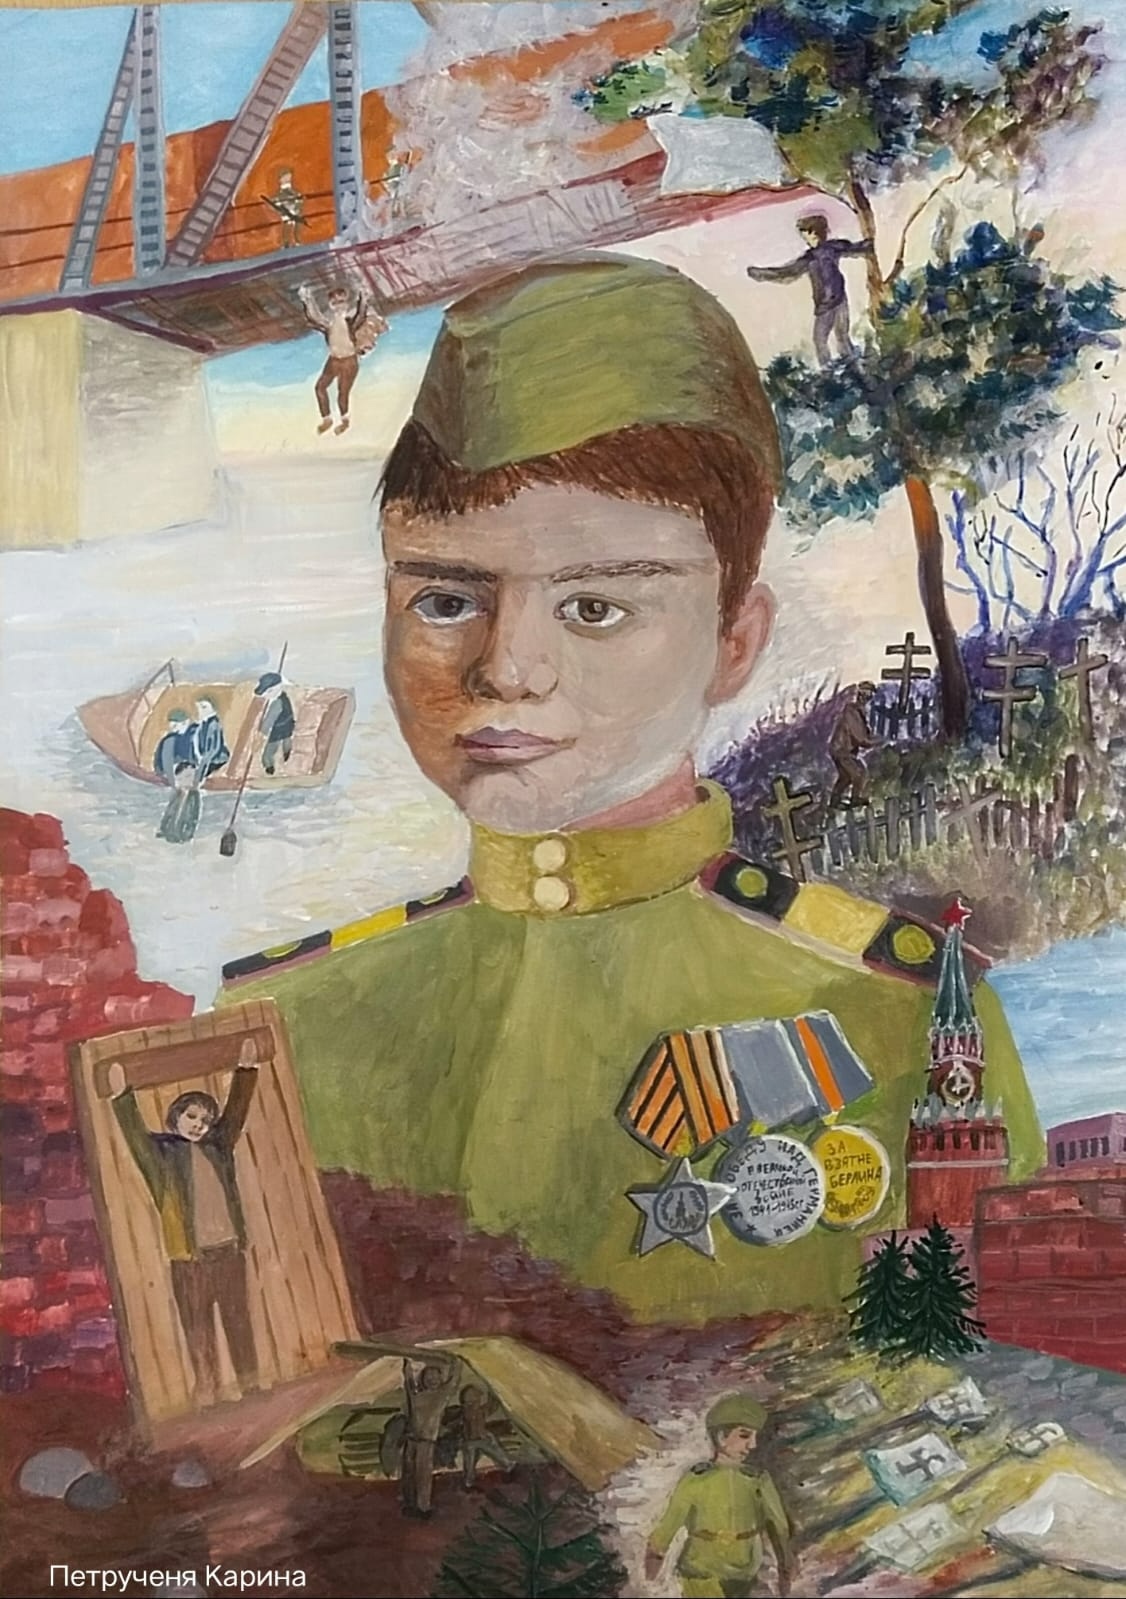 «Саша Колесников: бесстрашный герой. Распятый, но выживший» - работа Карины Петрученя, учащейся Судской детской школы искусств.